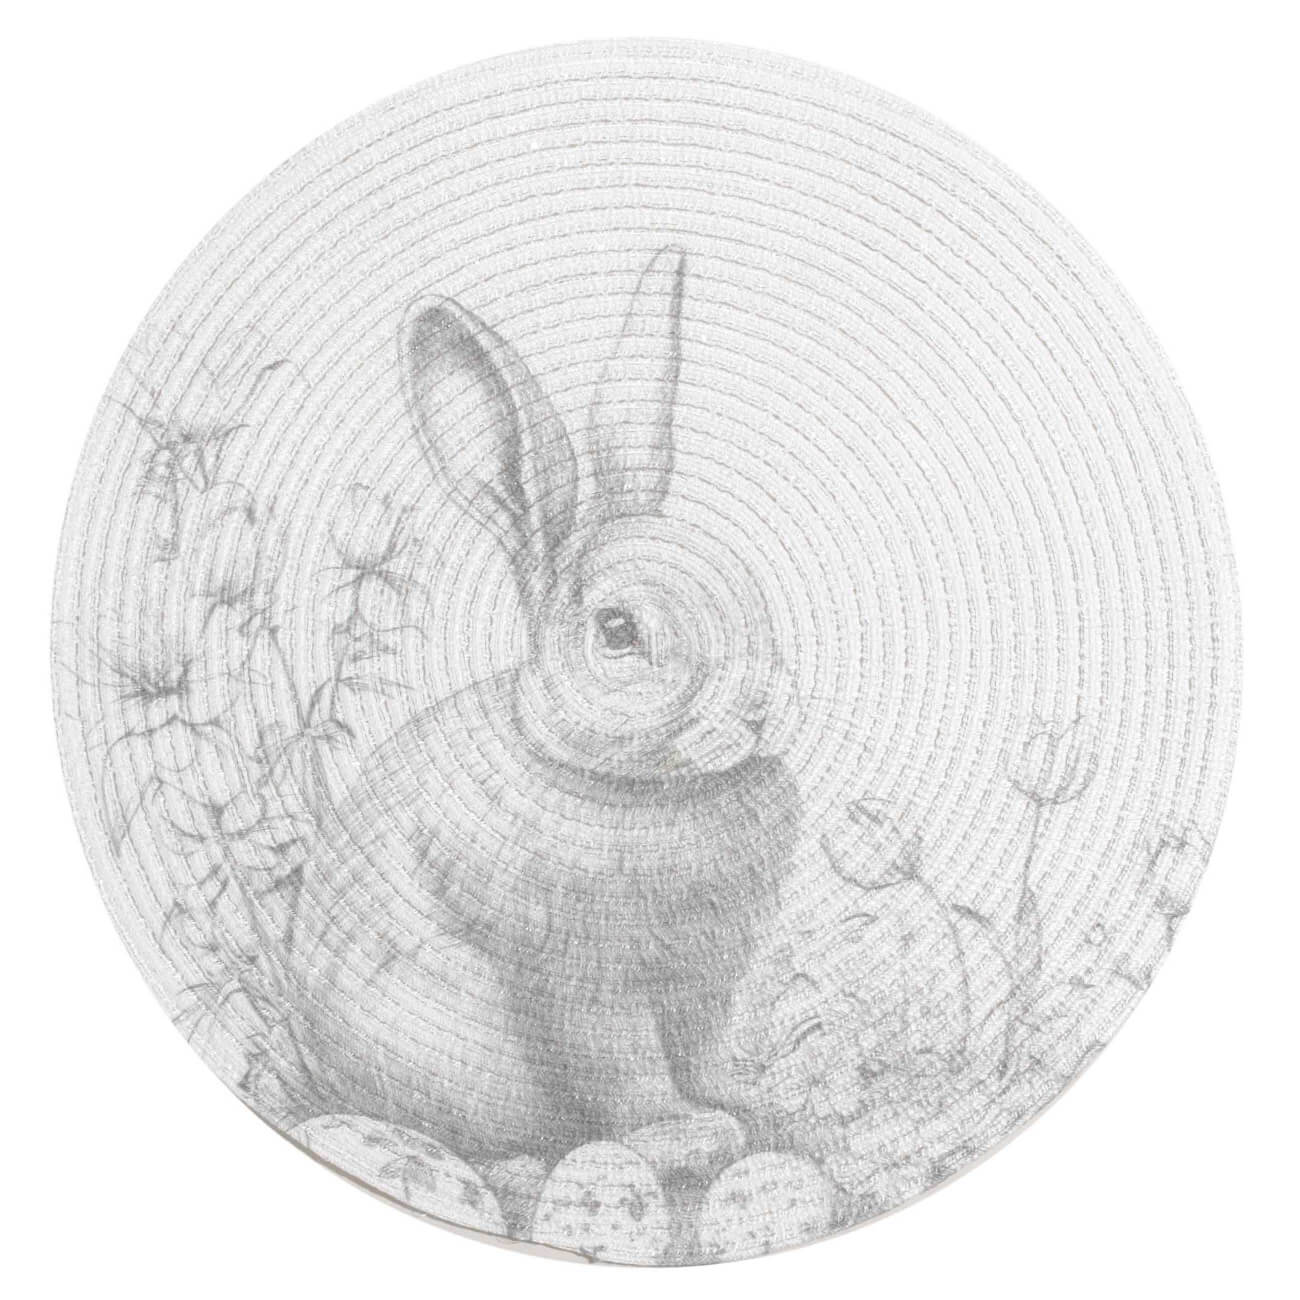 Салфетка под приборы, 38 см, полиэстер, круглая, белая, Графичный кролик, Rotary print салфетка для кухни ladina